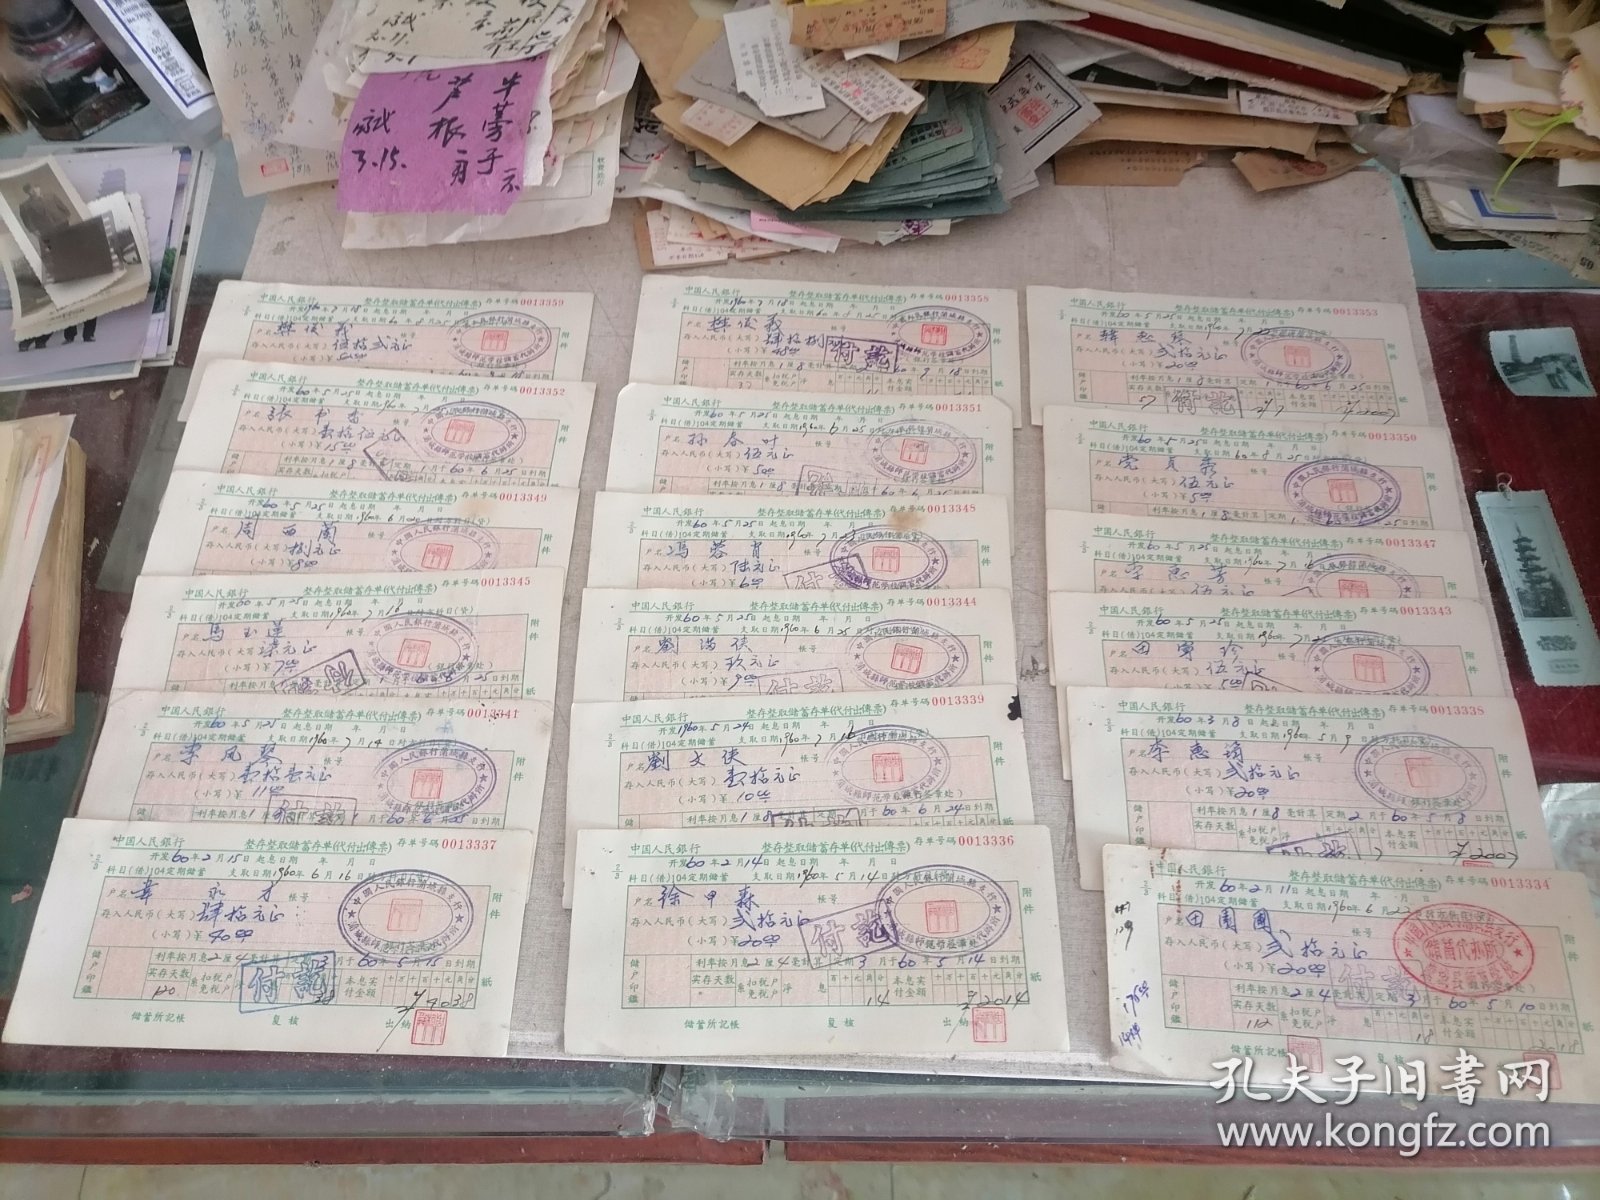 票证：1960年中国人民银行整存整取储蓄存单（18份）（盖有“中国人民银行蒲城支行：蒲城县师范学校储蓄代办所”印章）